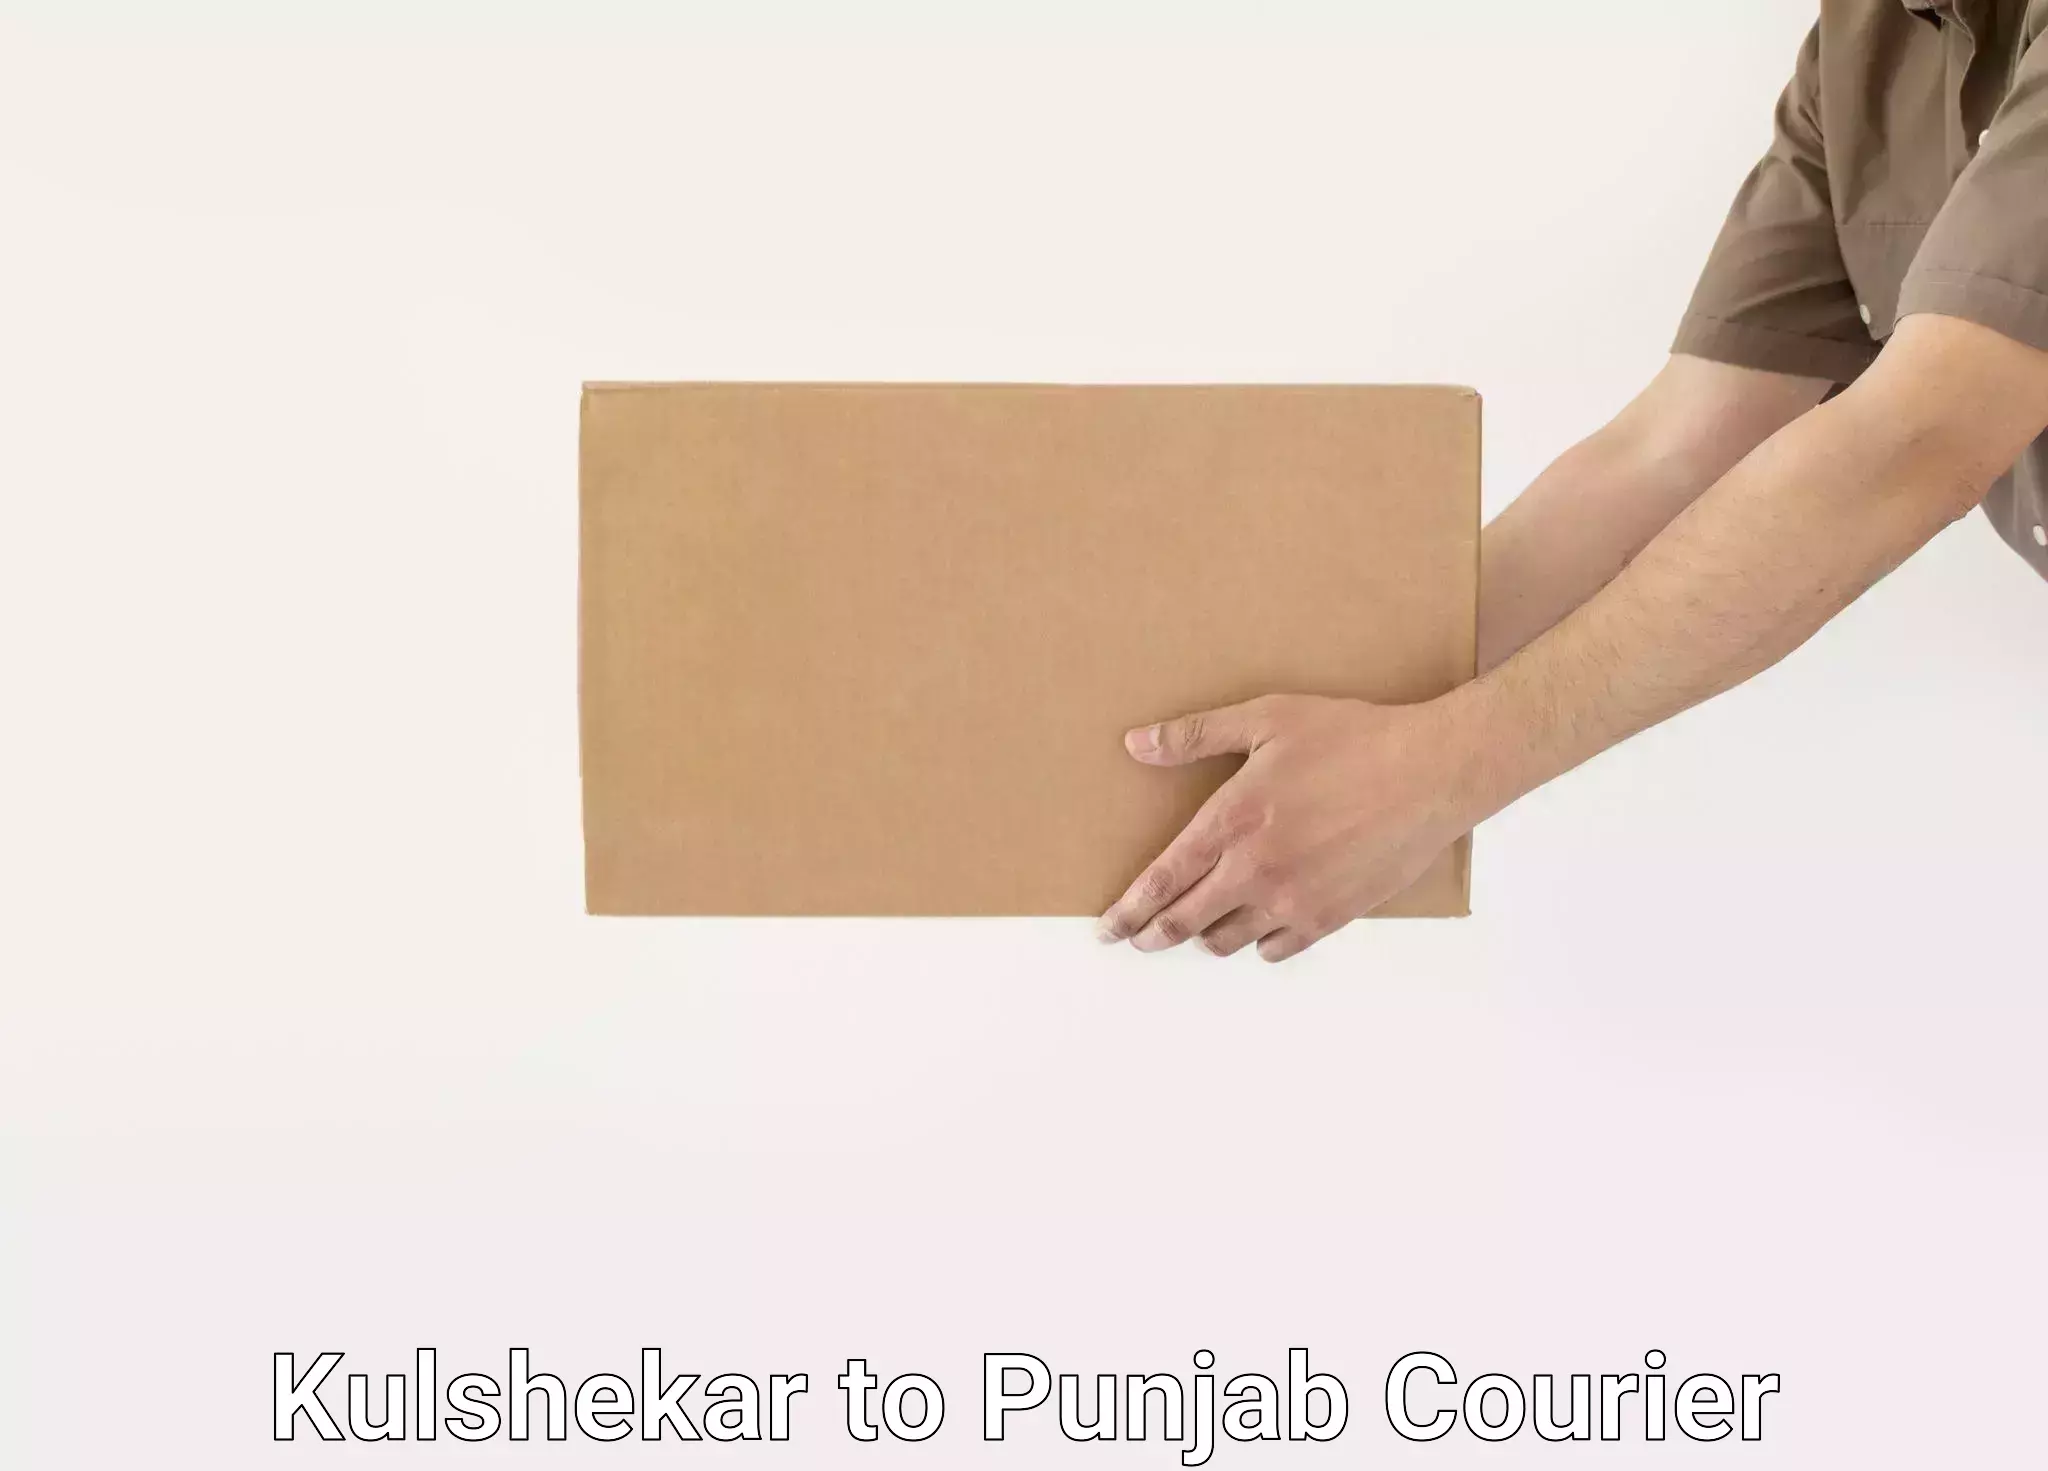 Seamless moving process Kulshekar to Punjab